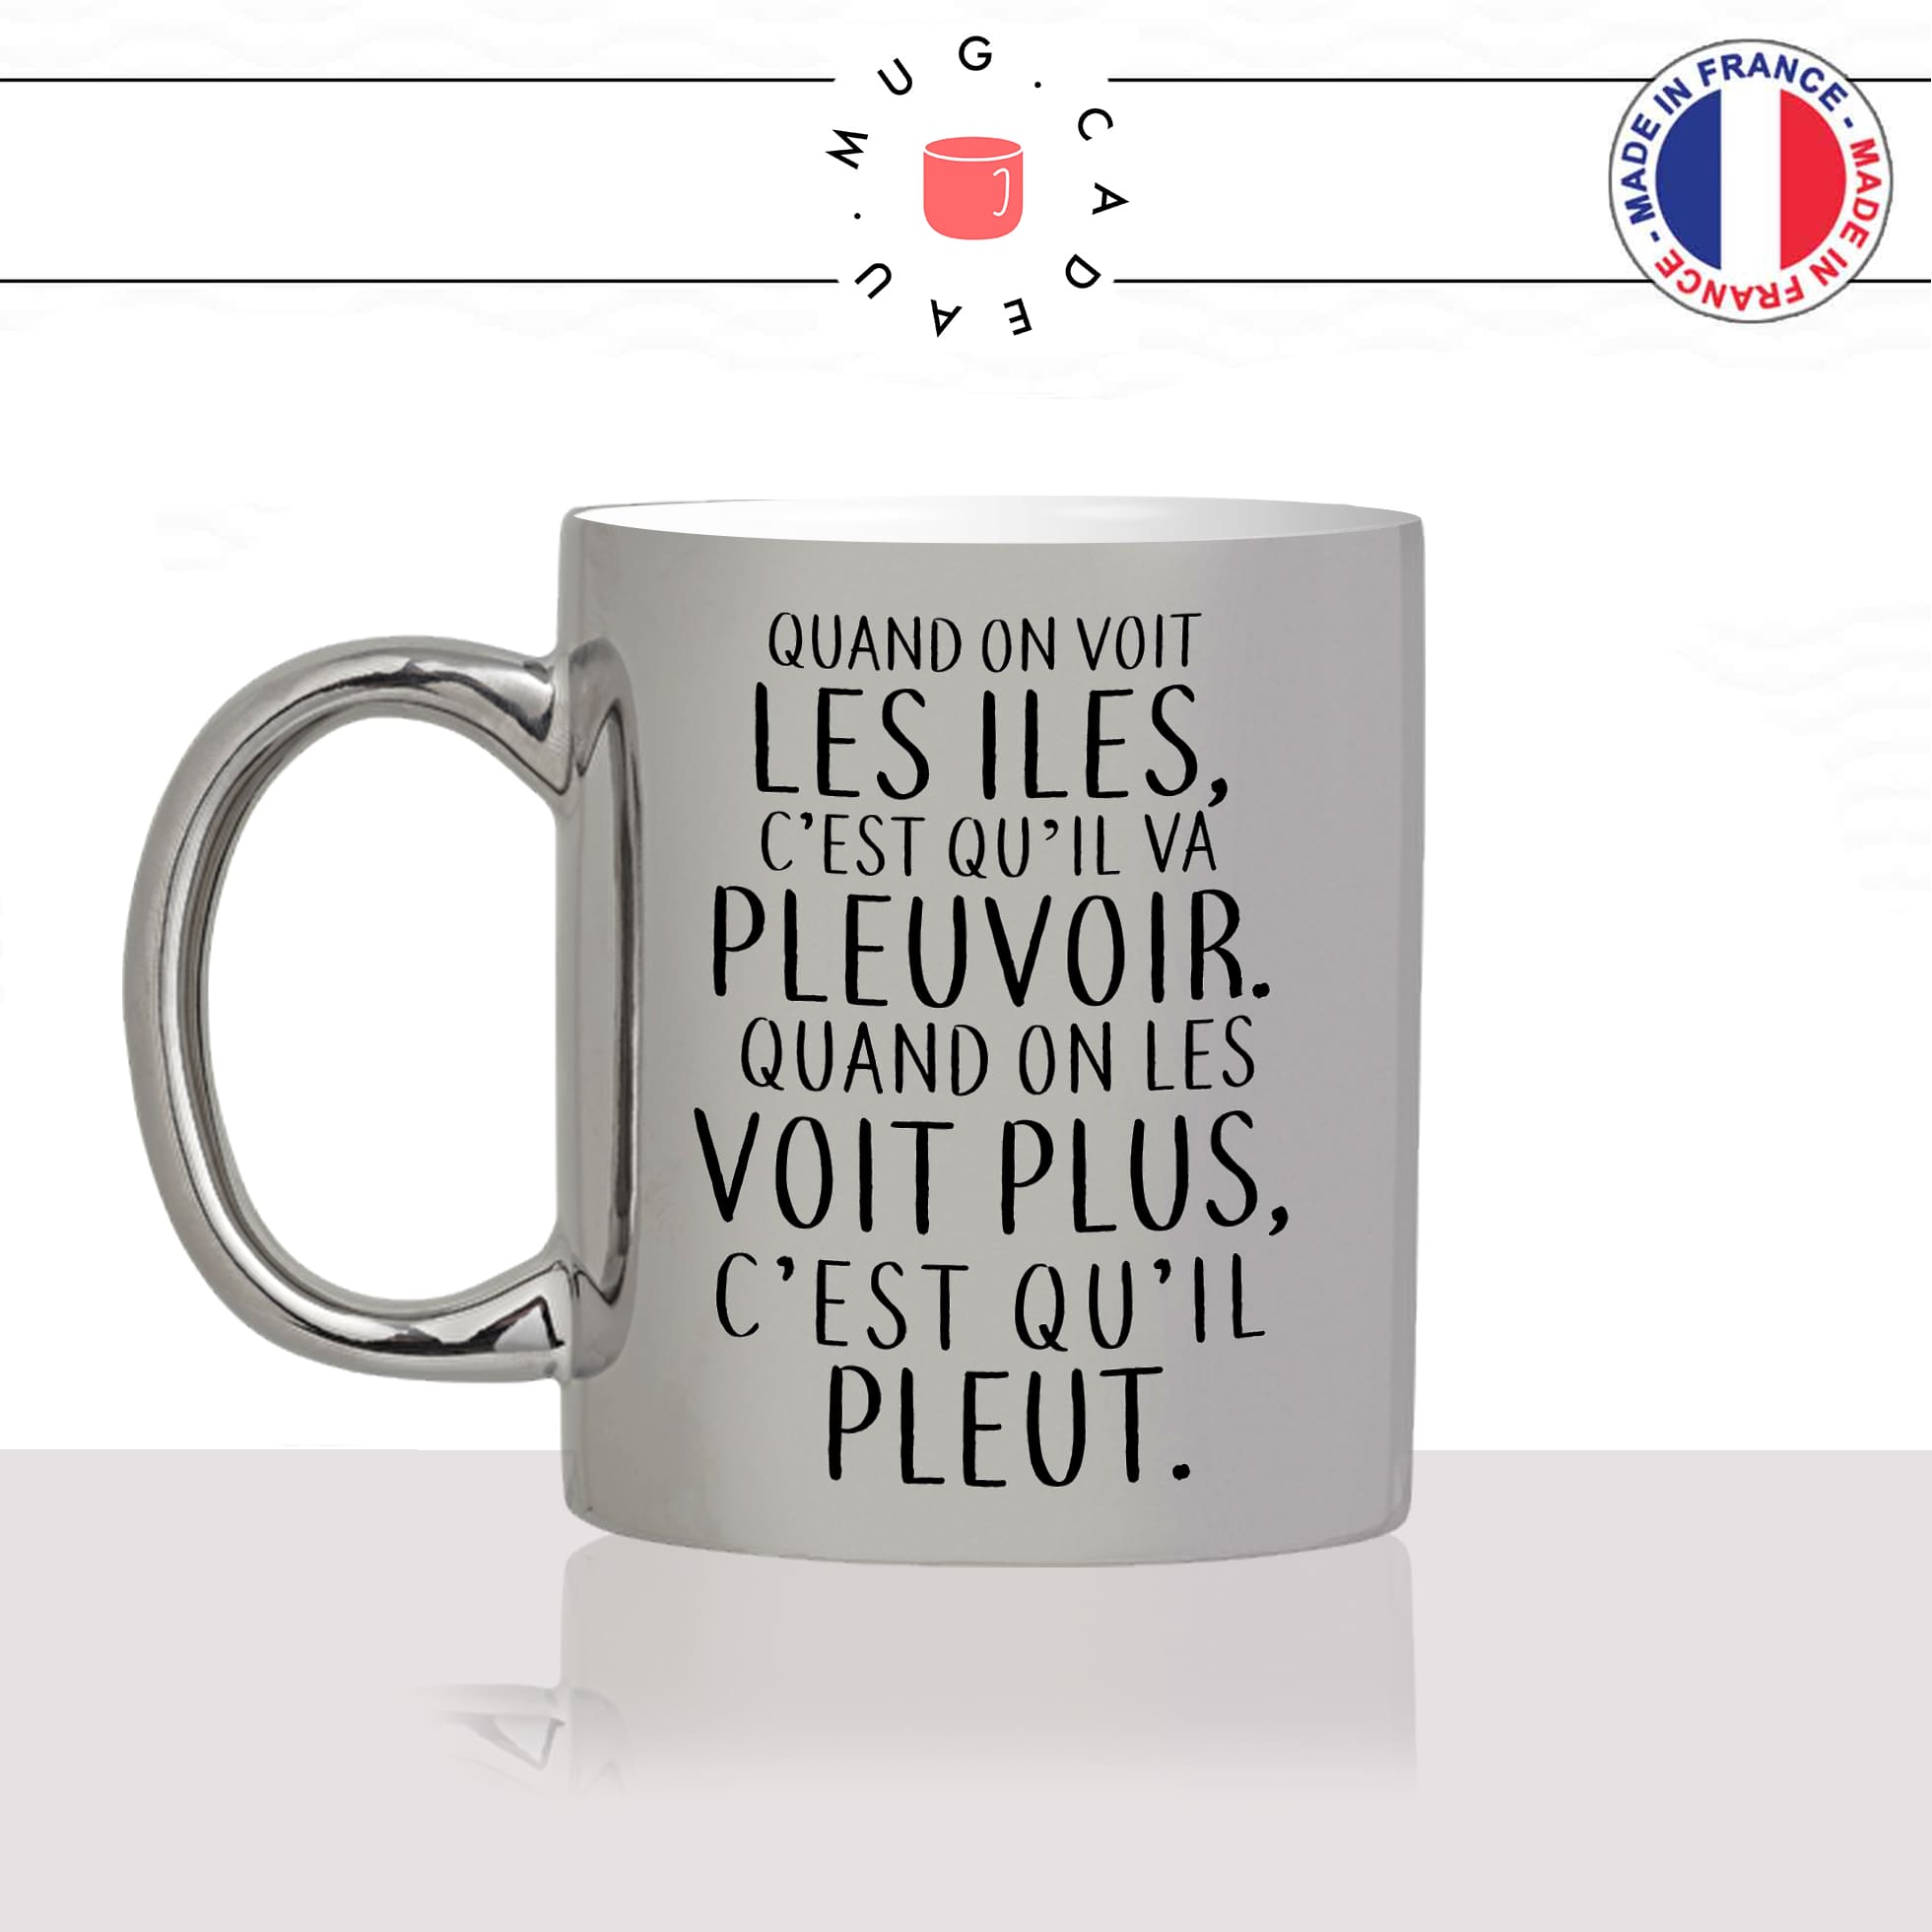 mug-tasse-argent-argenté-silver-dicton-breton-il-pleut-pluie-mauvais-temps-citation-bretagne-humour-france-idée-cadeau-fun-cool-café-thé